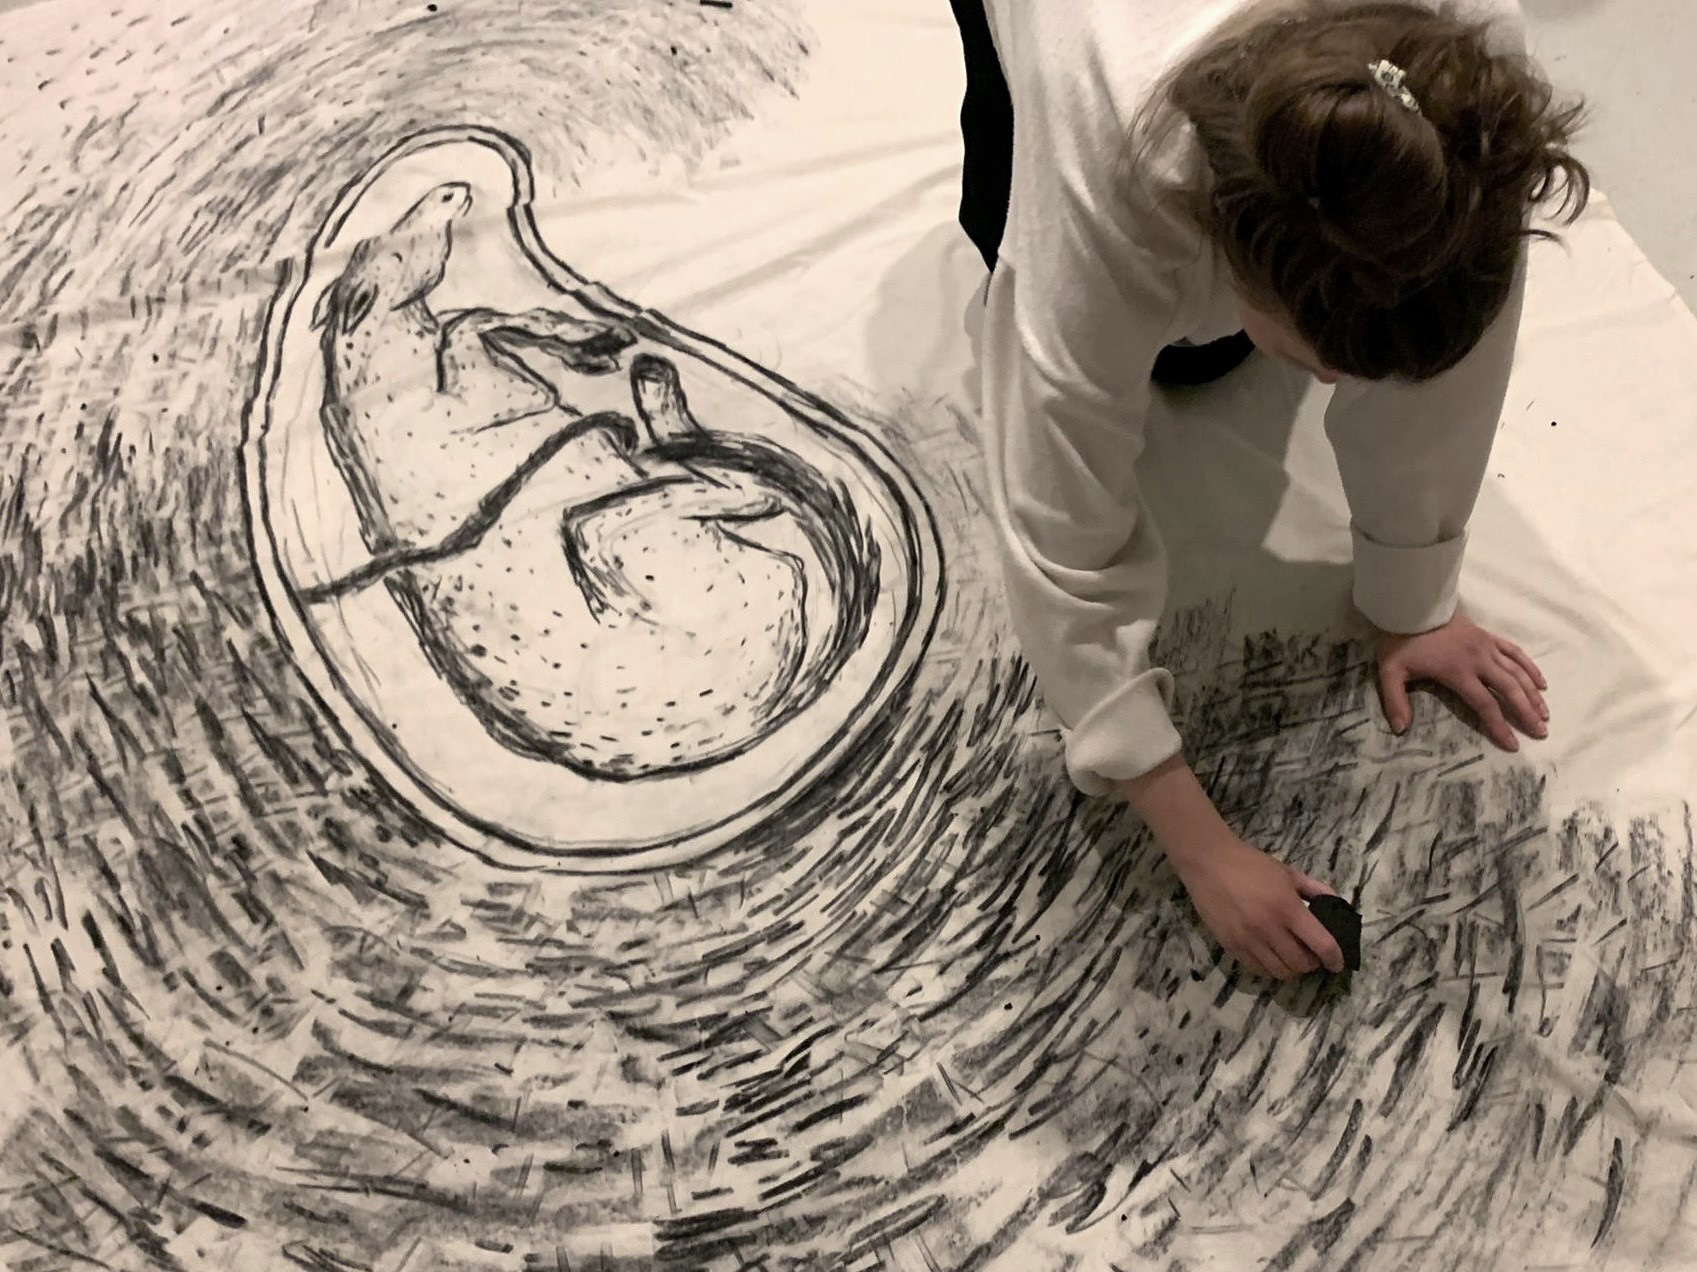 Taiteilija piirtää hiilellä suurta piirrosta kankaalle lattialla. Piirroksessa näkyy kuin hevosen varsa olisi kohdussa.